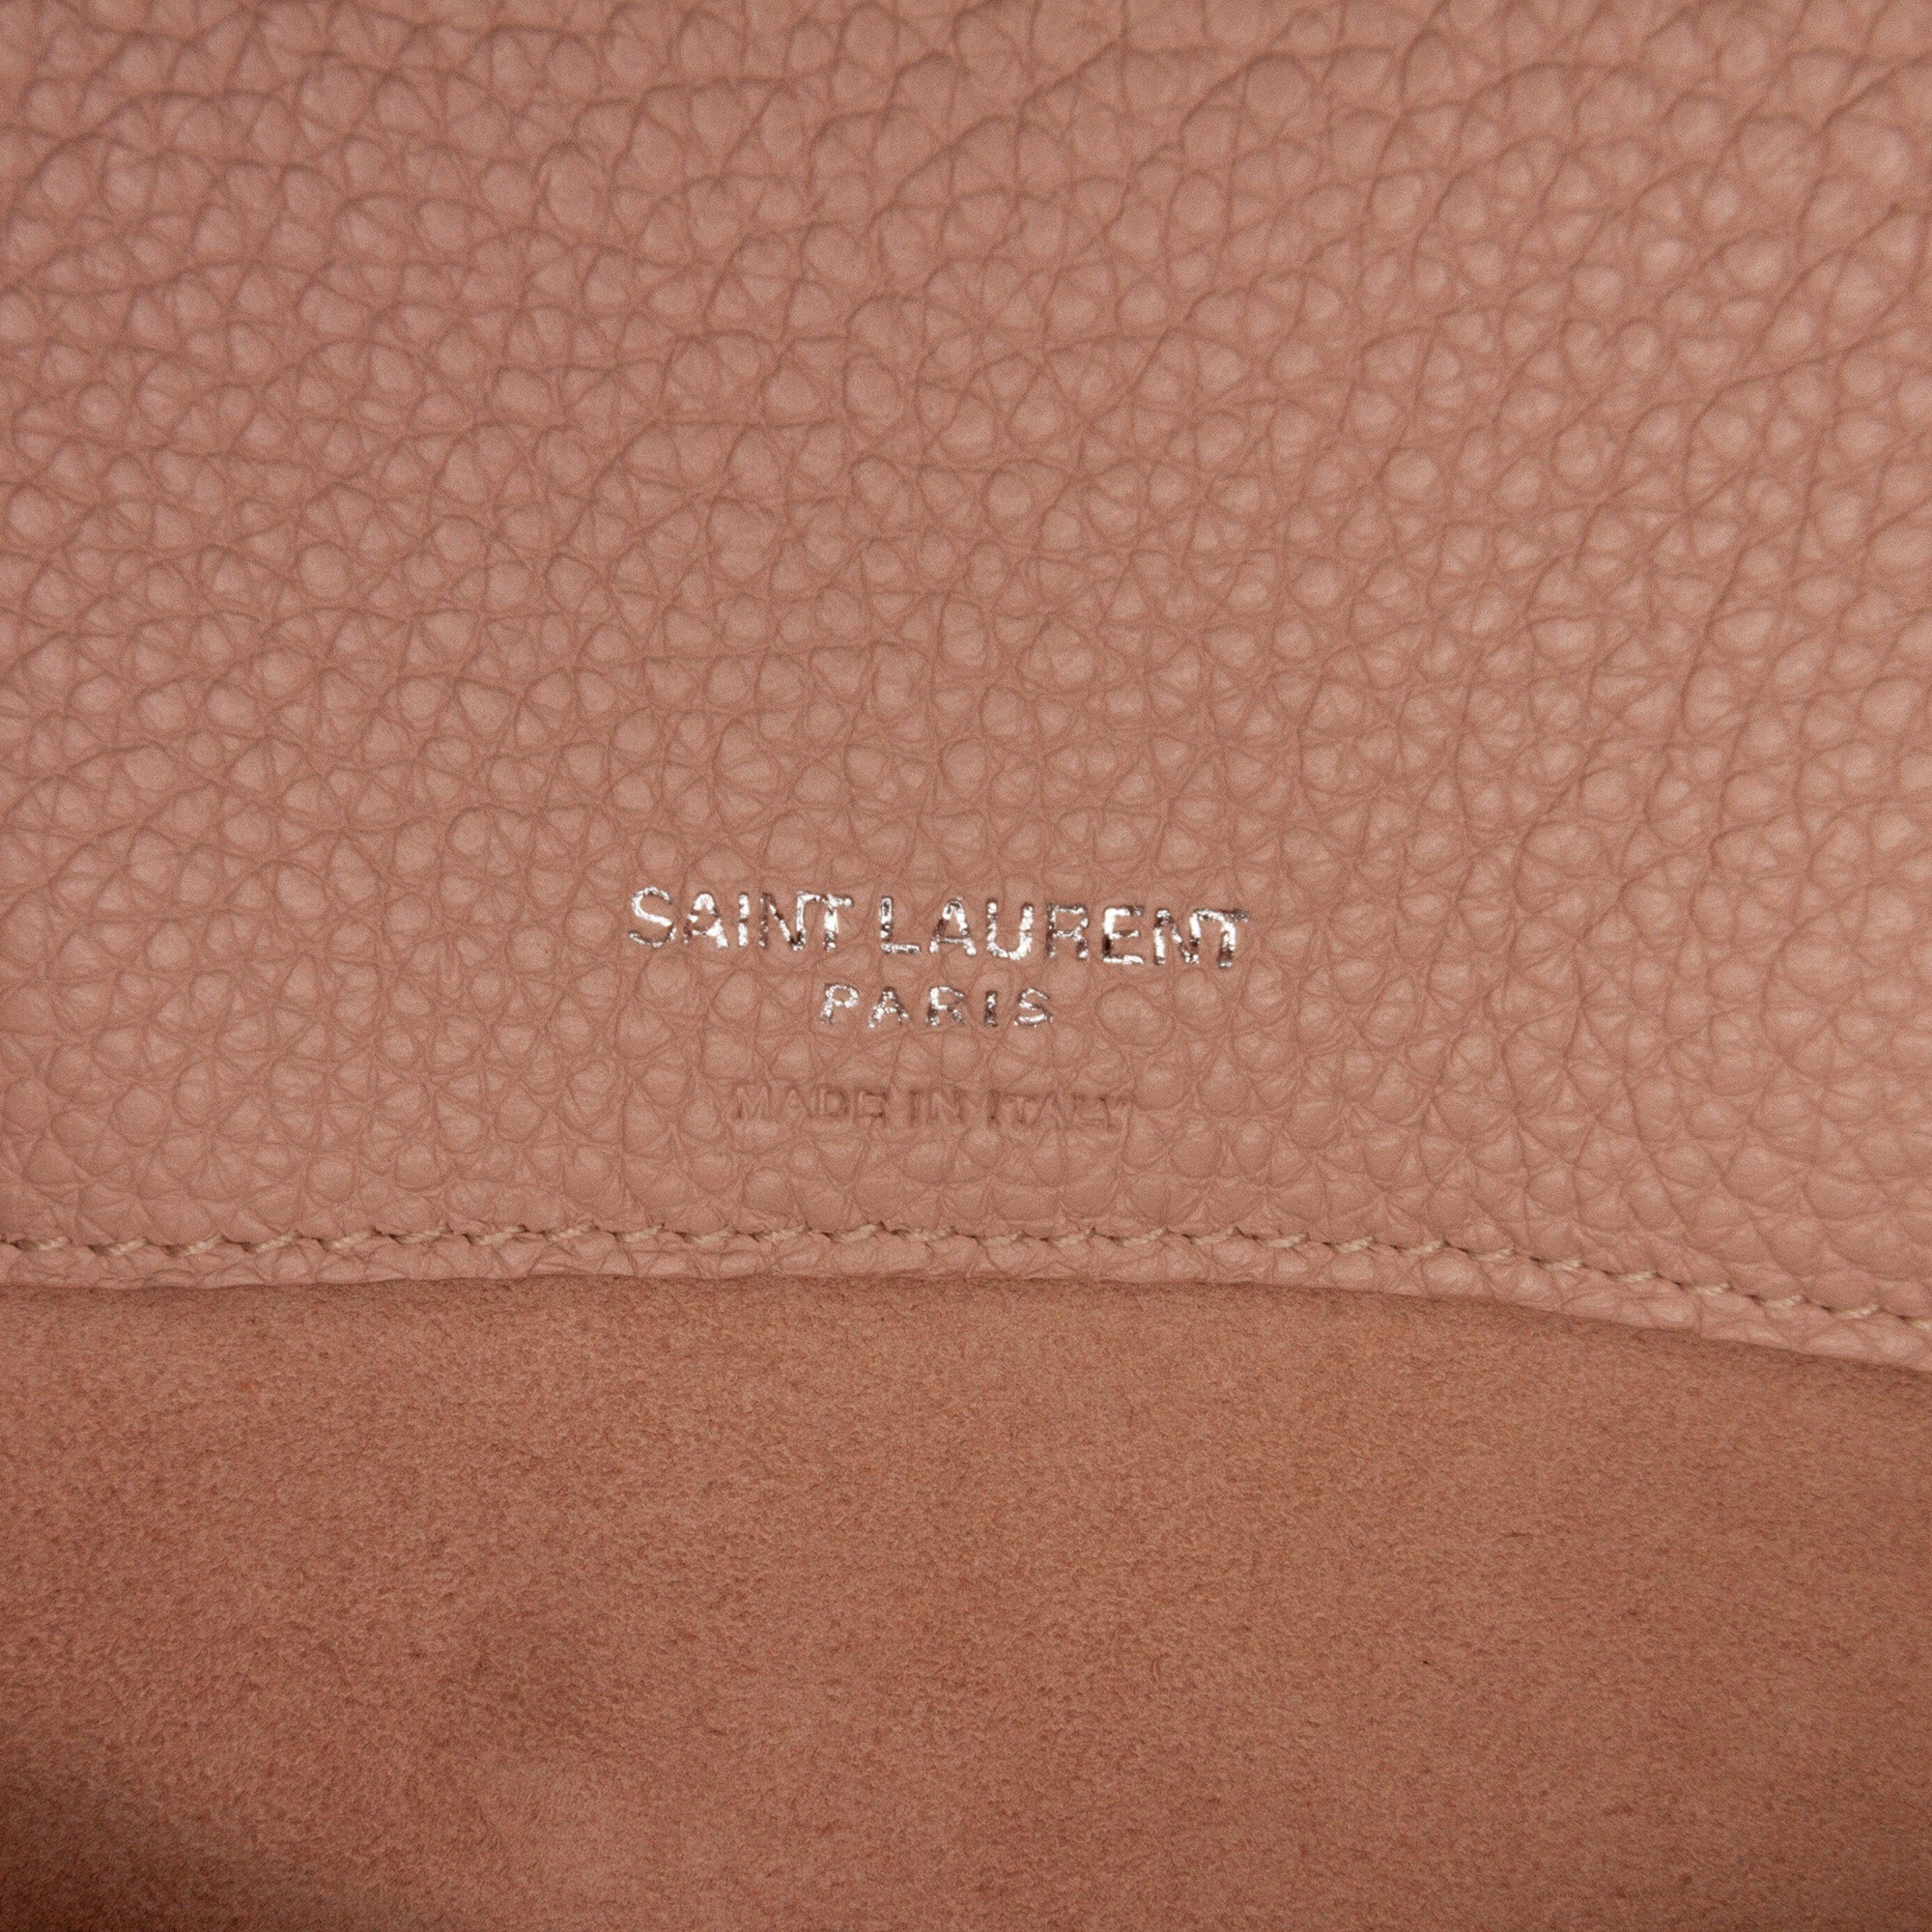 Pink Saint Laurent Nano Sac de Jour Satchel – Designer Revival